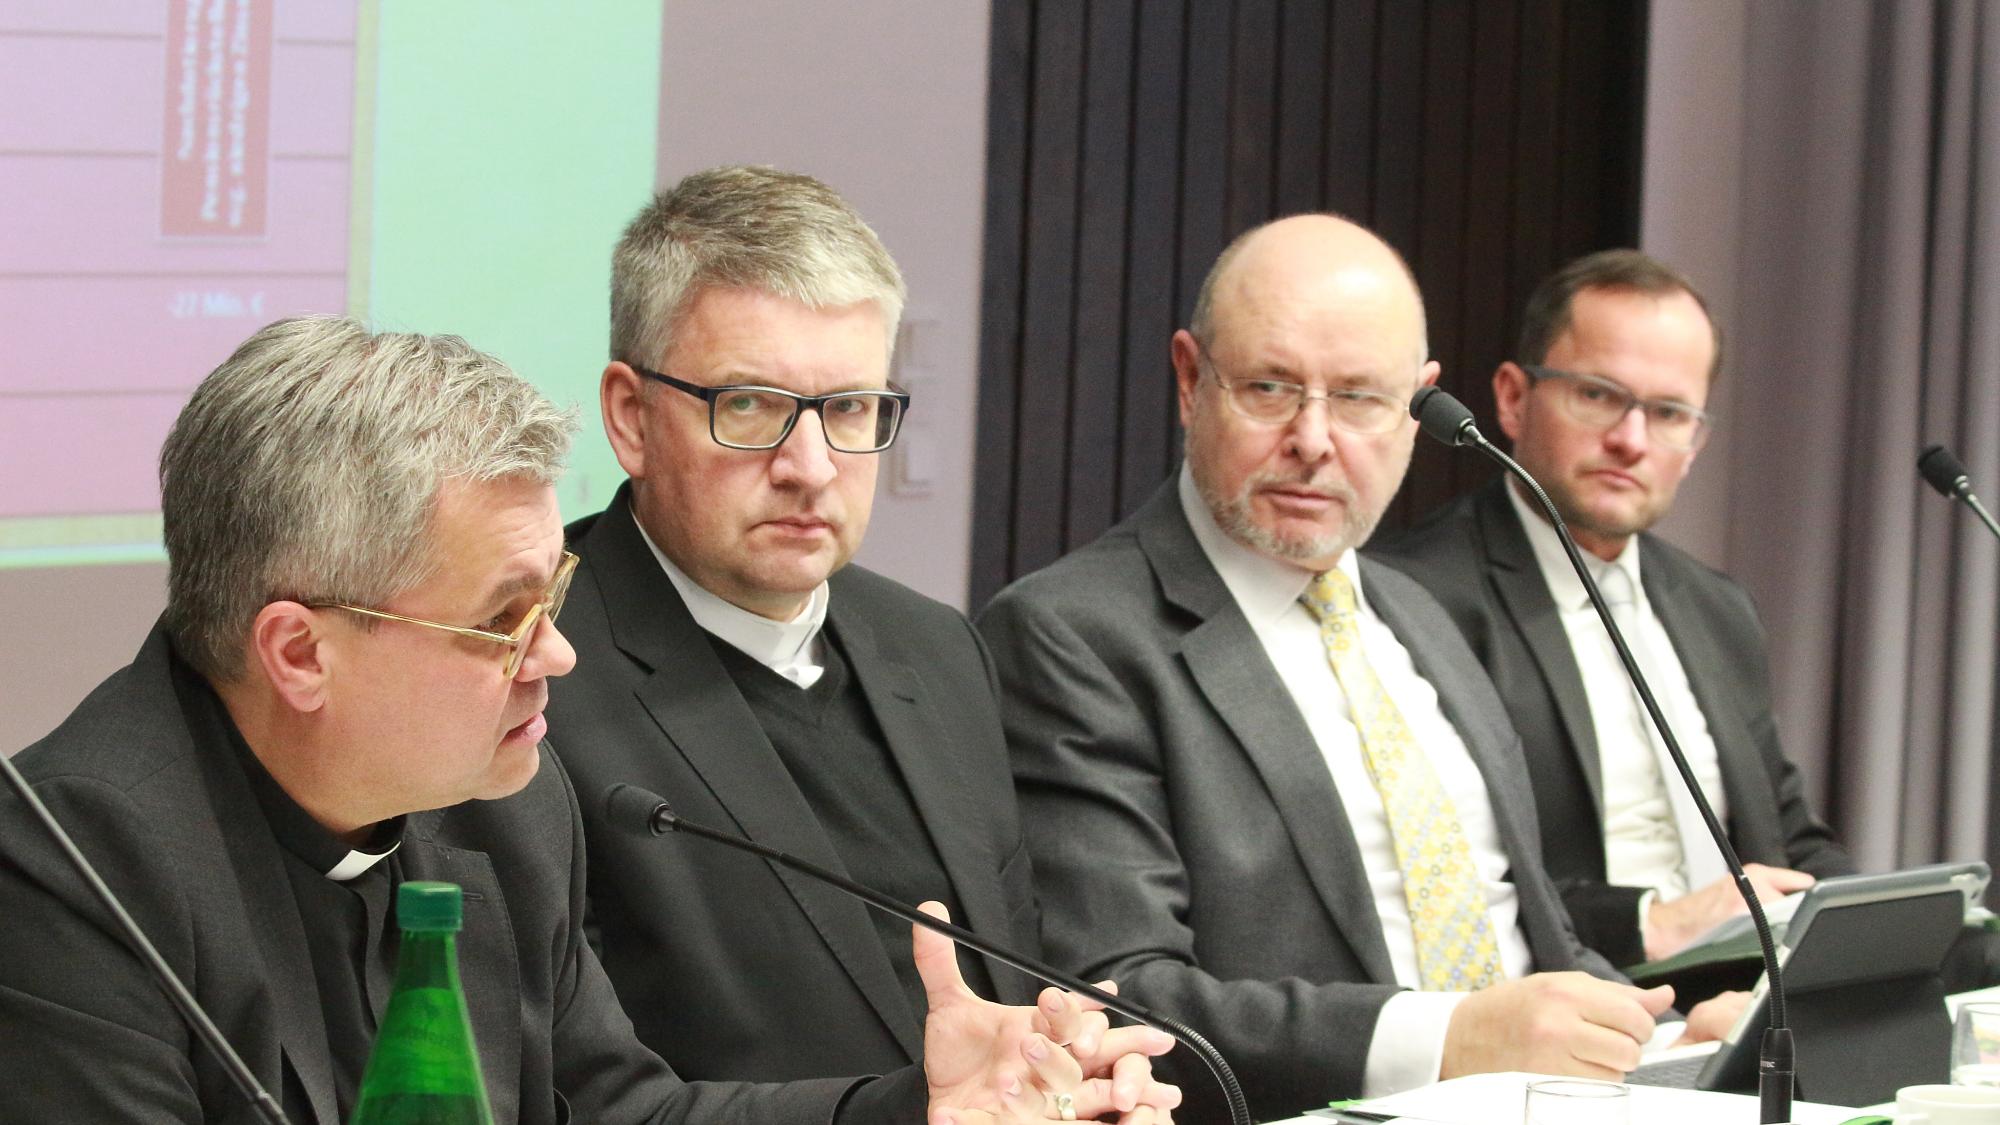 Mainz, 15. Dezember 2018: Weihbischof Udo Markus Bentz (links) erläuterte erste Schritte zur Konsolidierung des Bistumshaushaltes; daneben (v.l.n.r.): Bischof Peter Kohlgraf, Volker Kurz und Christof Molitor.